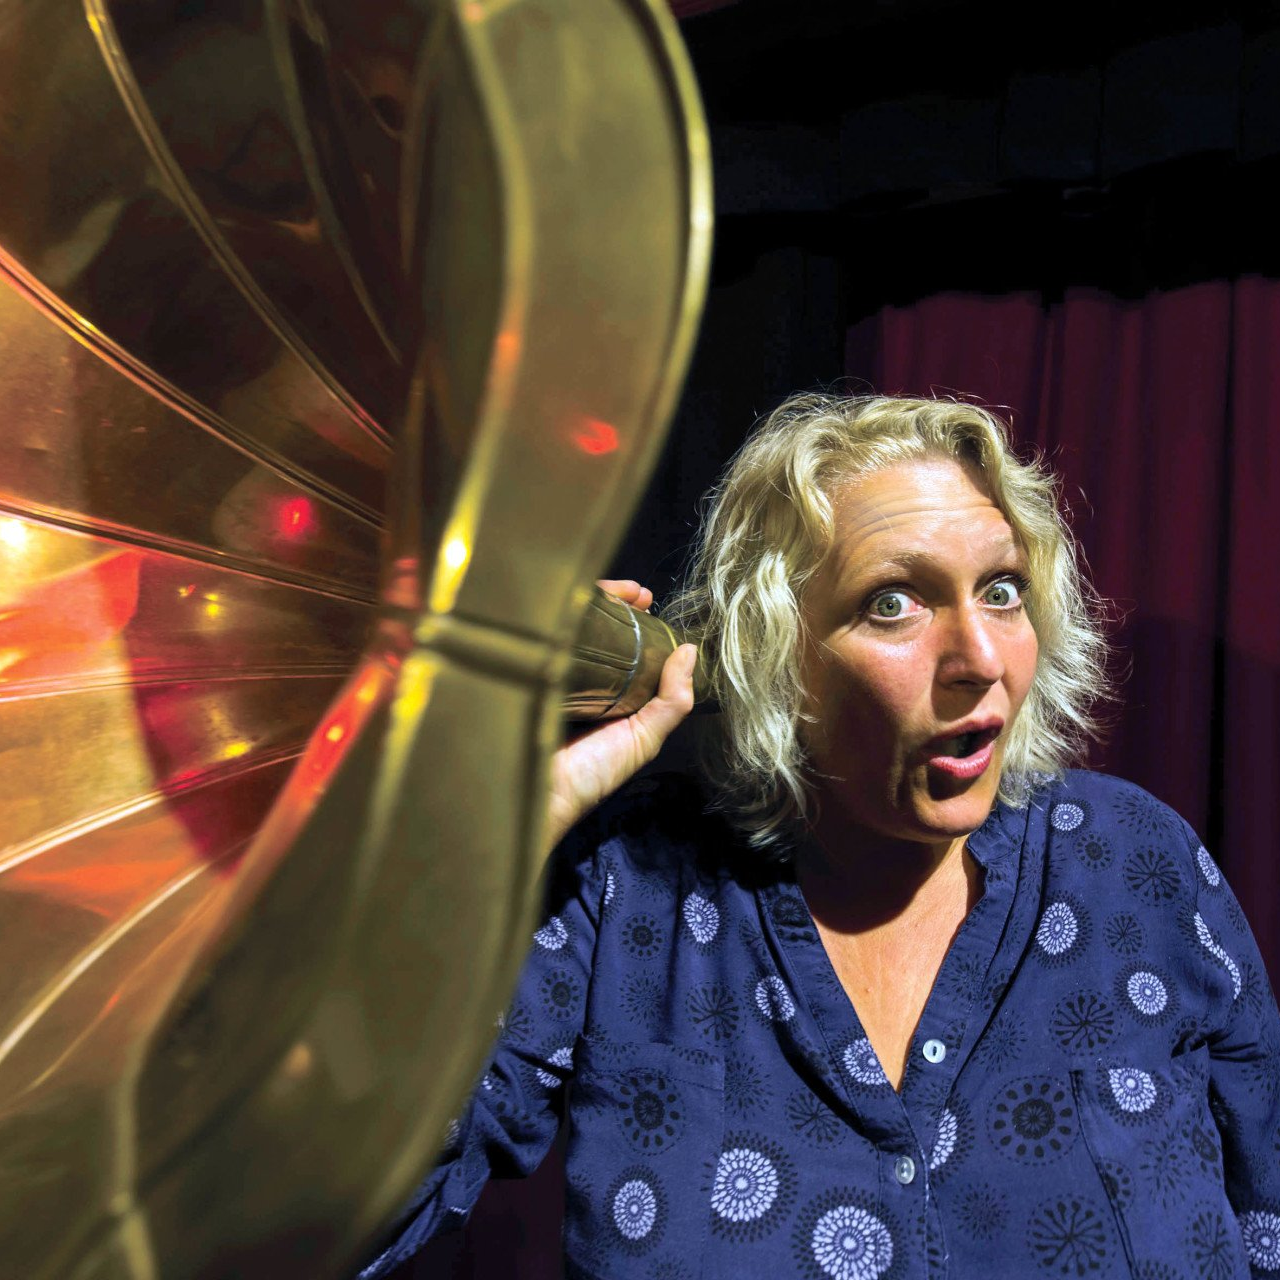 Ulrike Wesely steht vor einem roten Theatervorhand, hält sich einen Grammophontrichter vor ihr rechtes Ohr und macht dabei ein gespielt theatralisch erstauntes Gesicht.